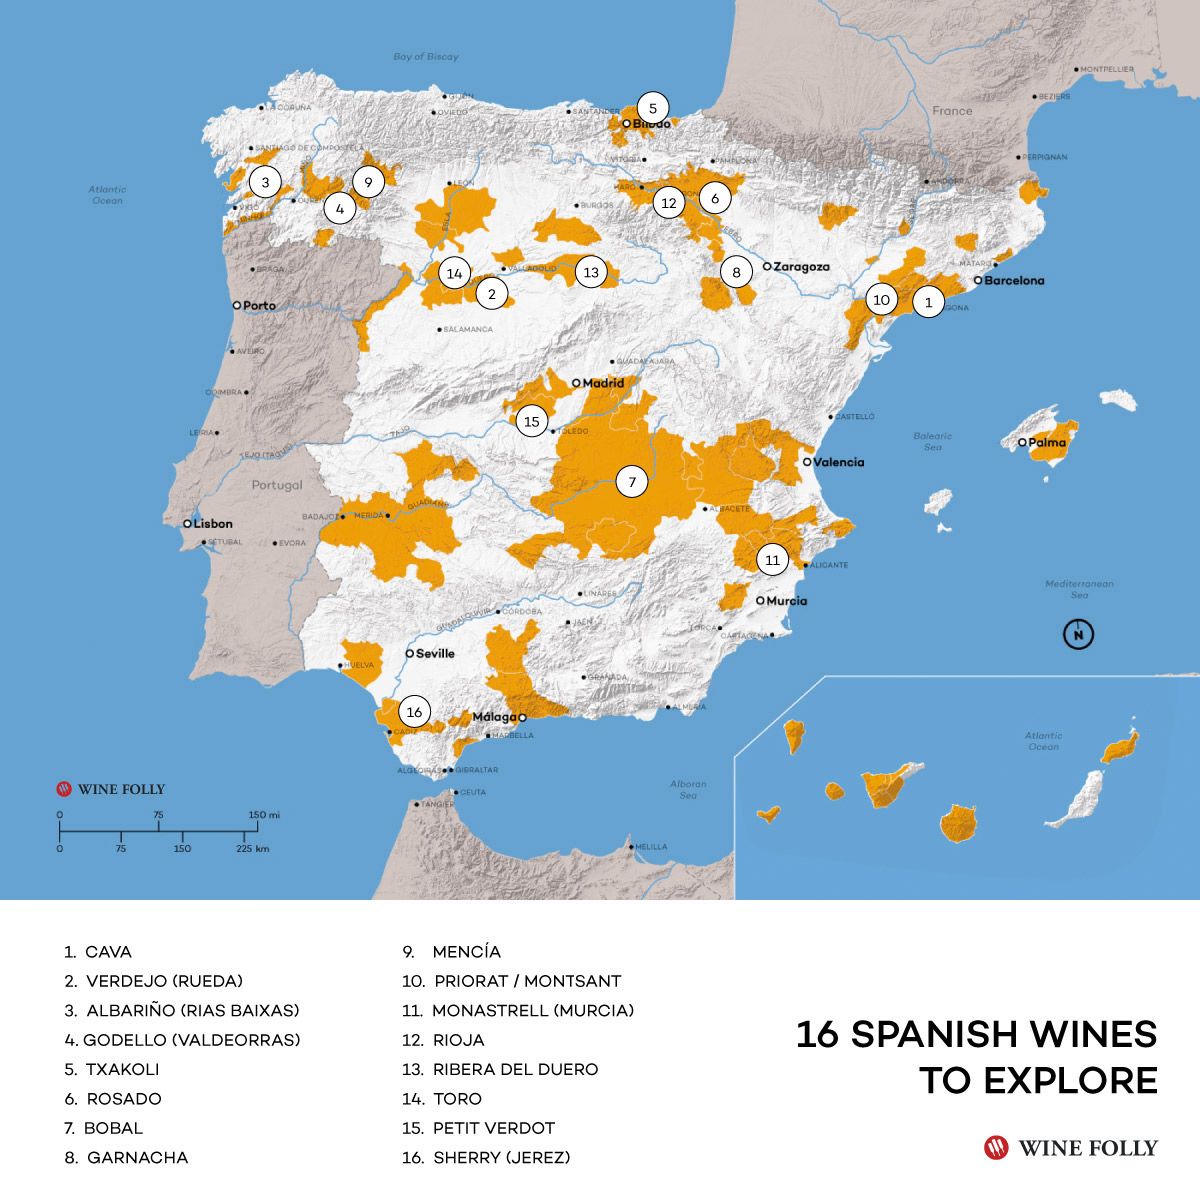 Испанска карта за изследване на виното от Wine Folly